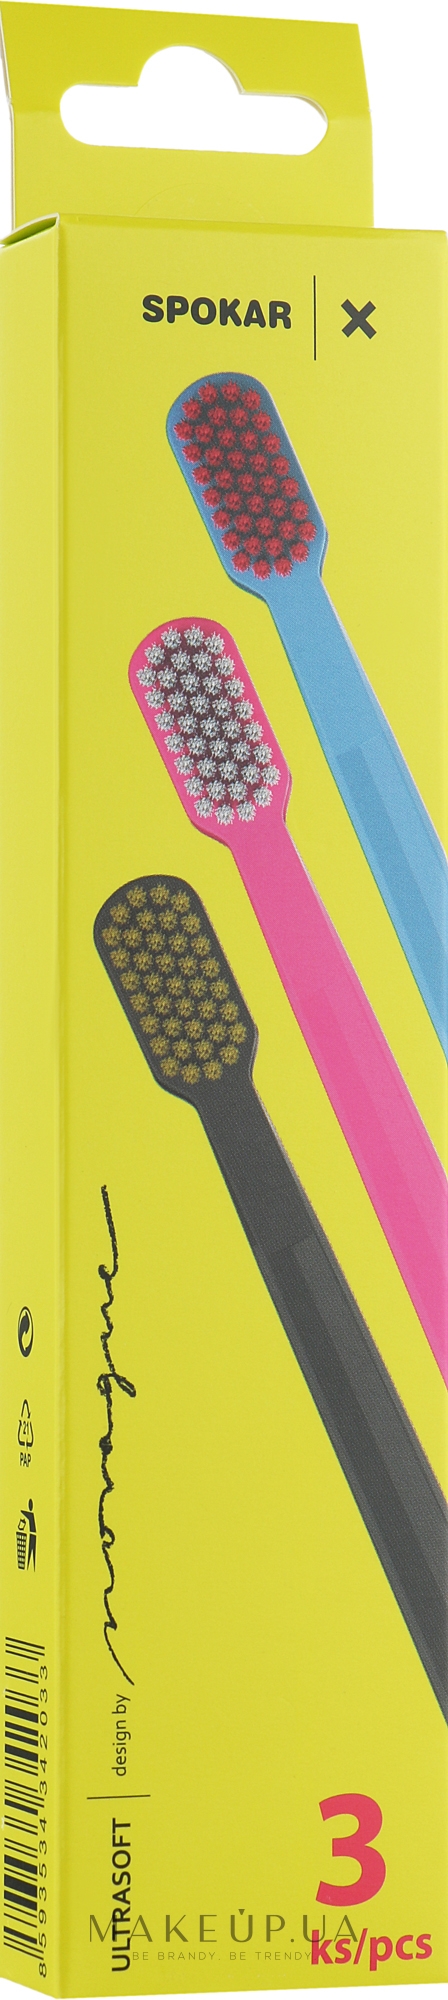 Набор зубных щеток "X", ультрамягких, сине-розовая + розово-белая + черно-желтая - Spokar X — фото 3шт